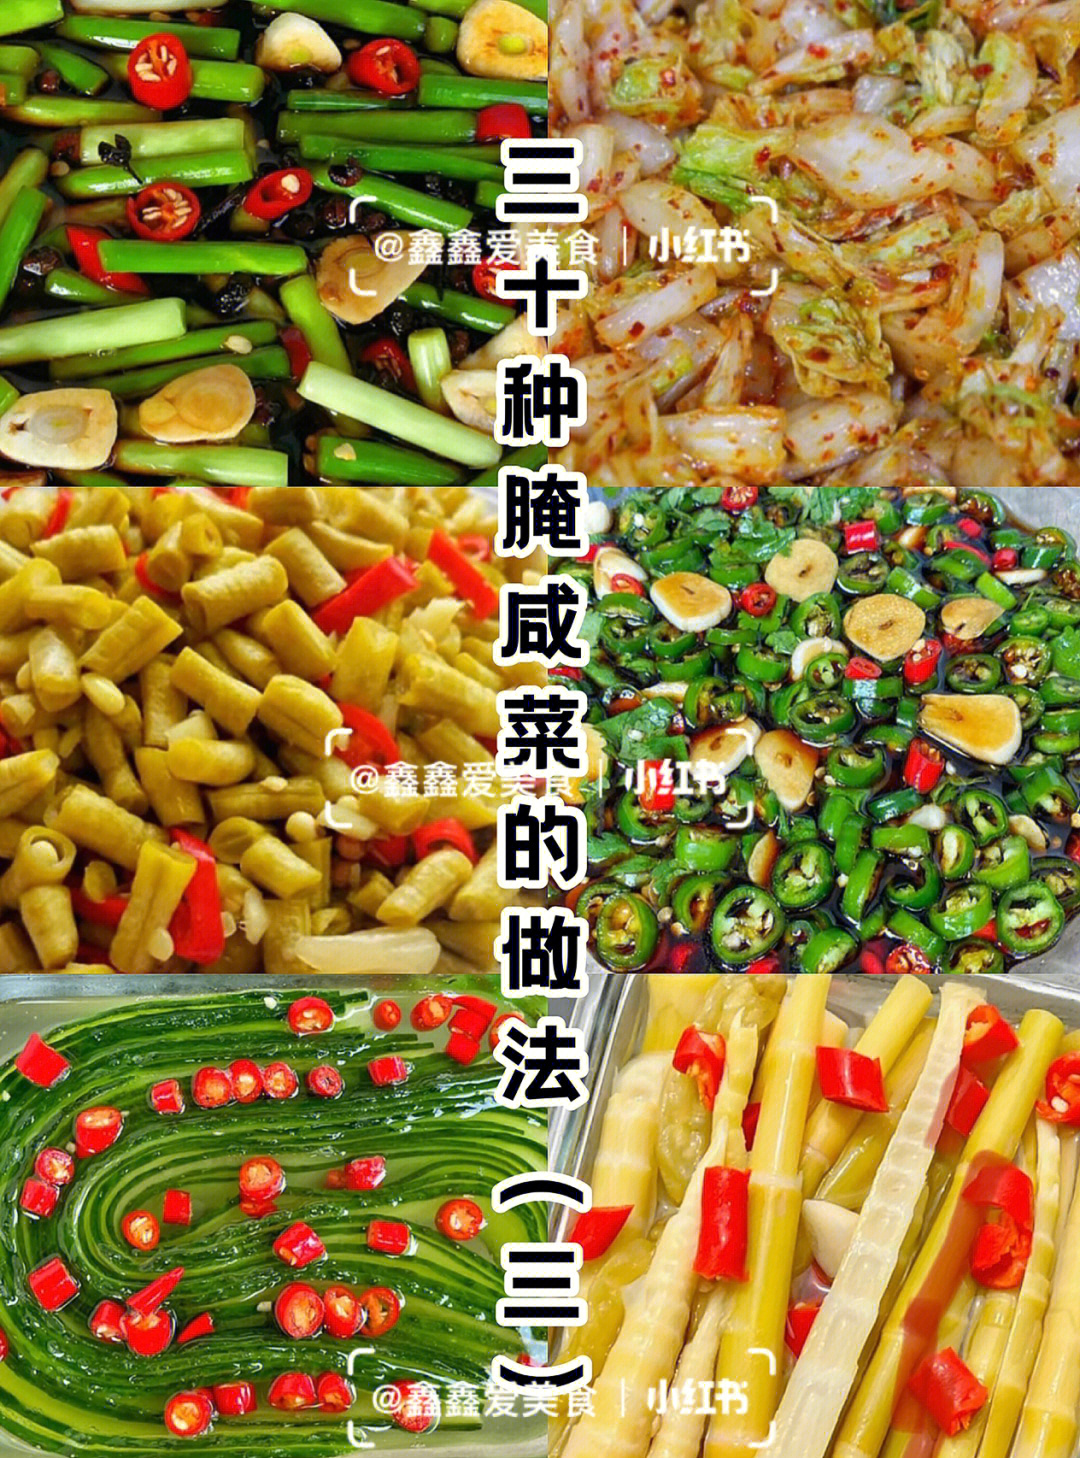 腌菜的种类及图片图片